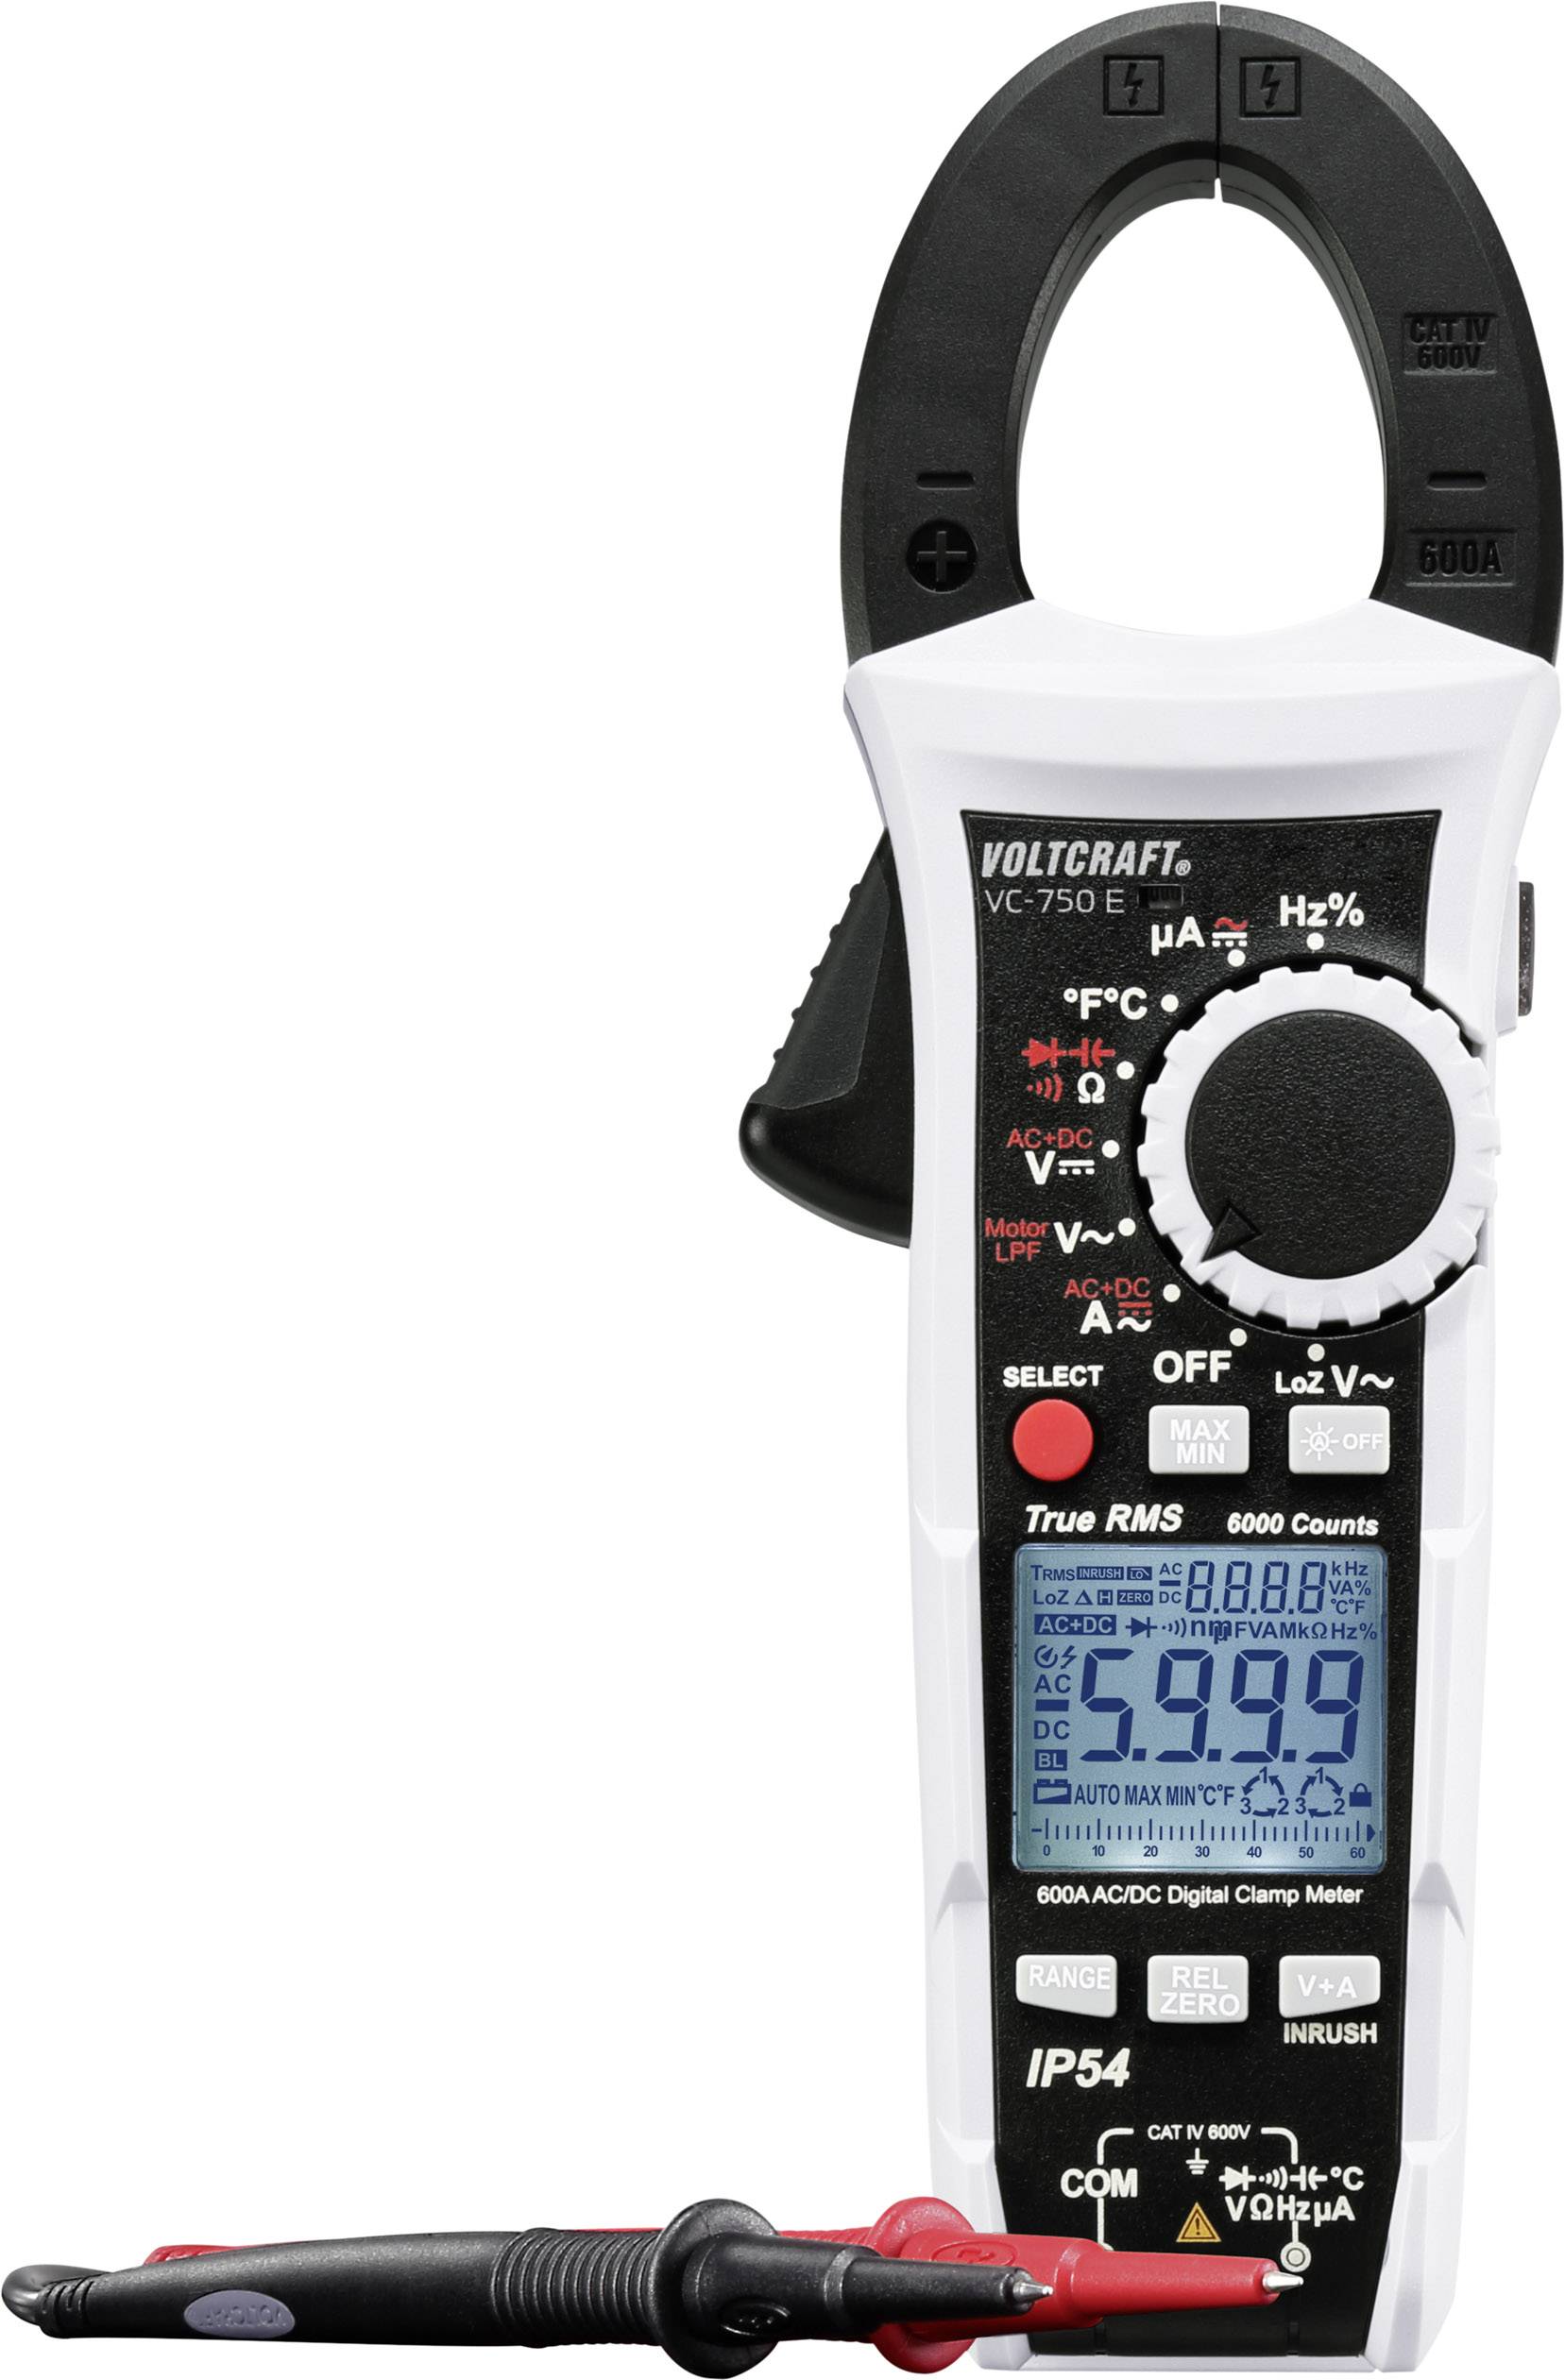 CONRAD VOLTCRAFT VC-750 E Stromzange, Hand-Multimeter kalibriert (ISO) digital Spritzwassergeschützt